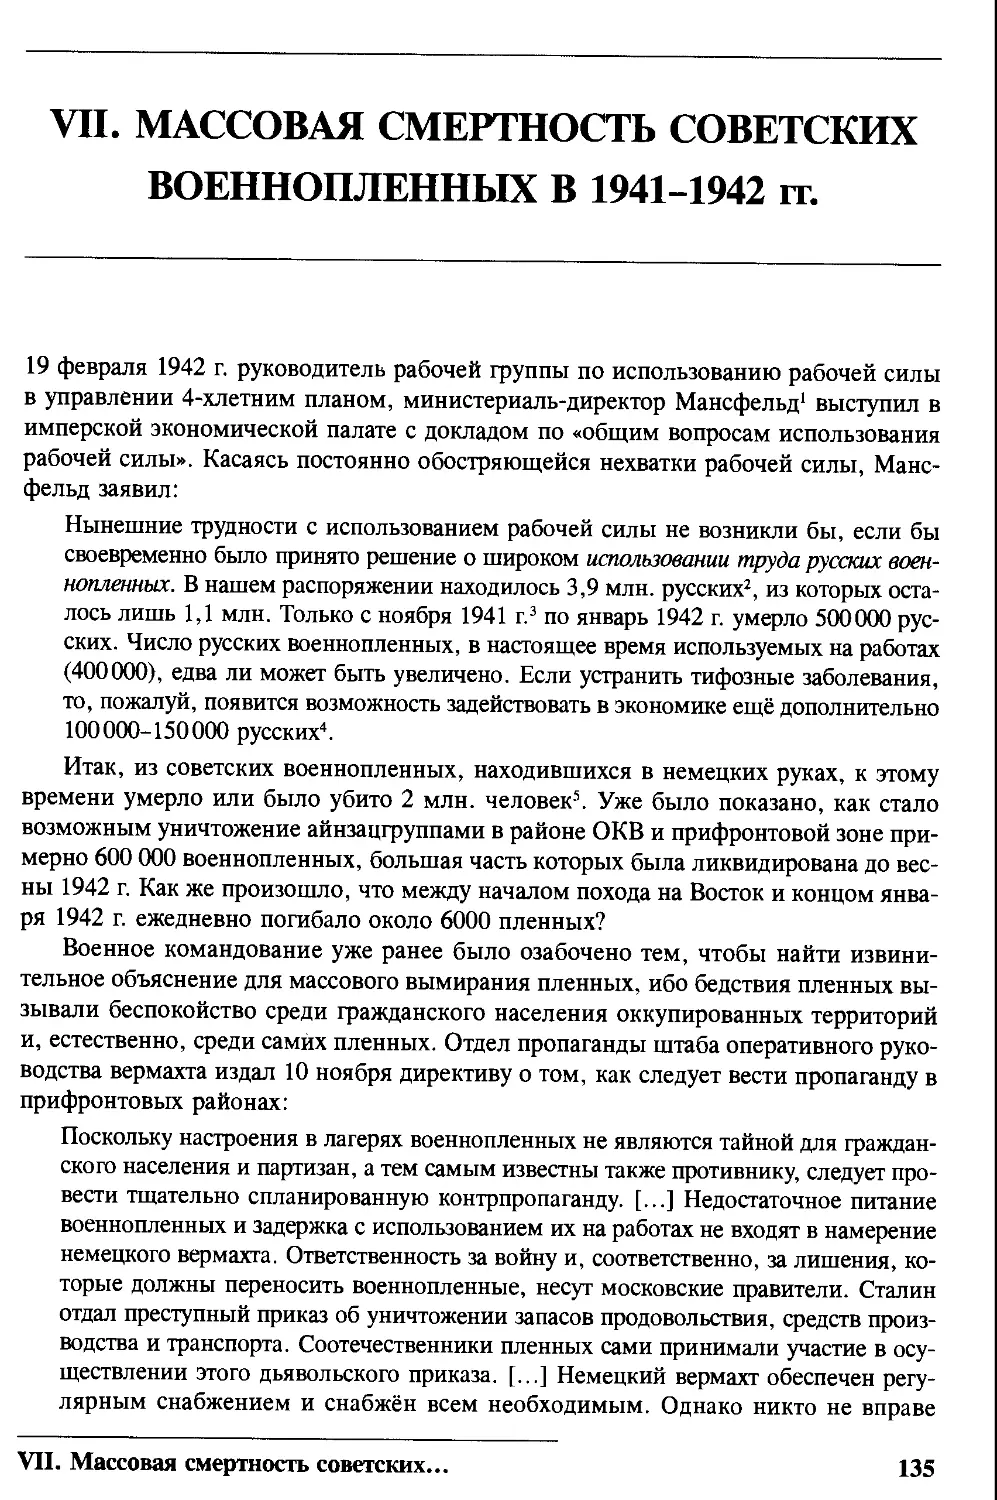 VII. Массовая смертность советских военнопленных в 1941-1942 гг.